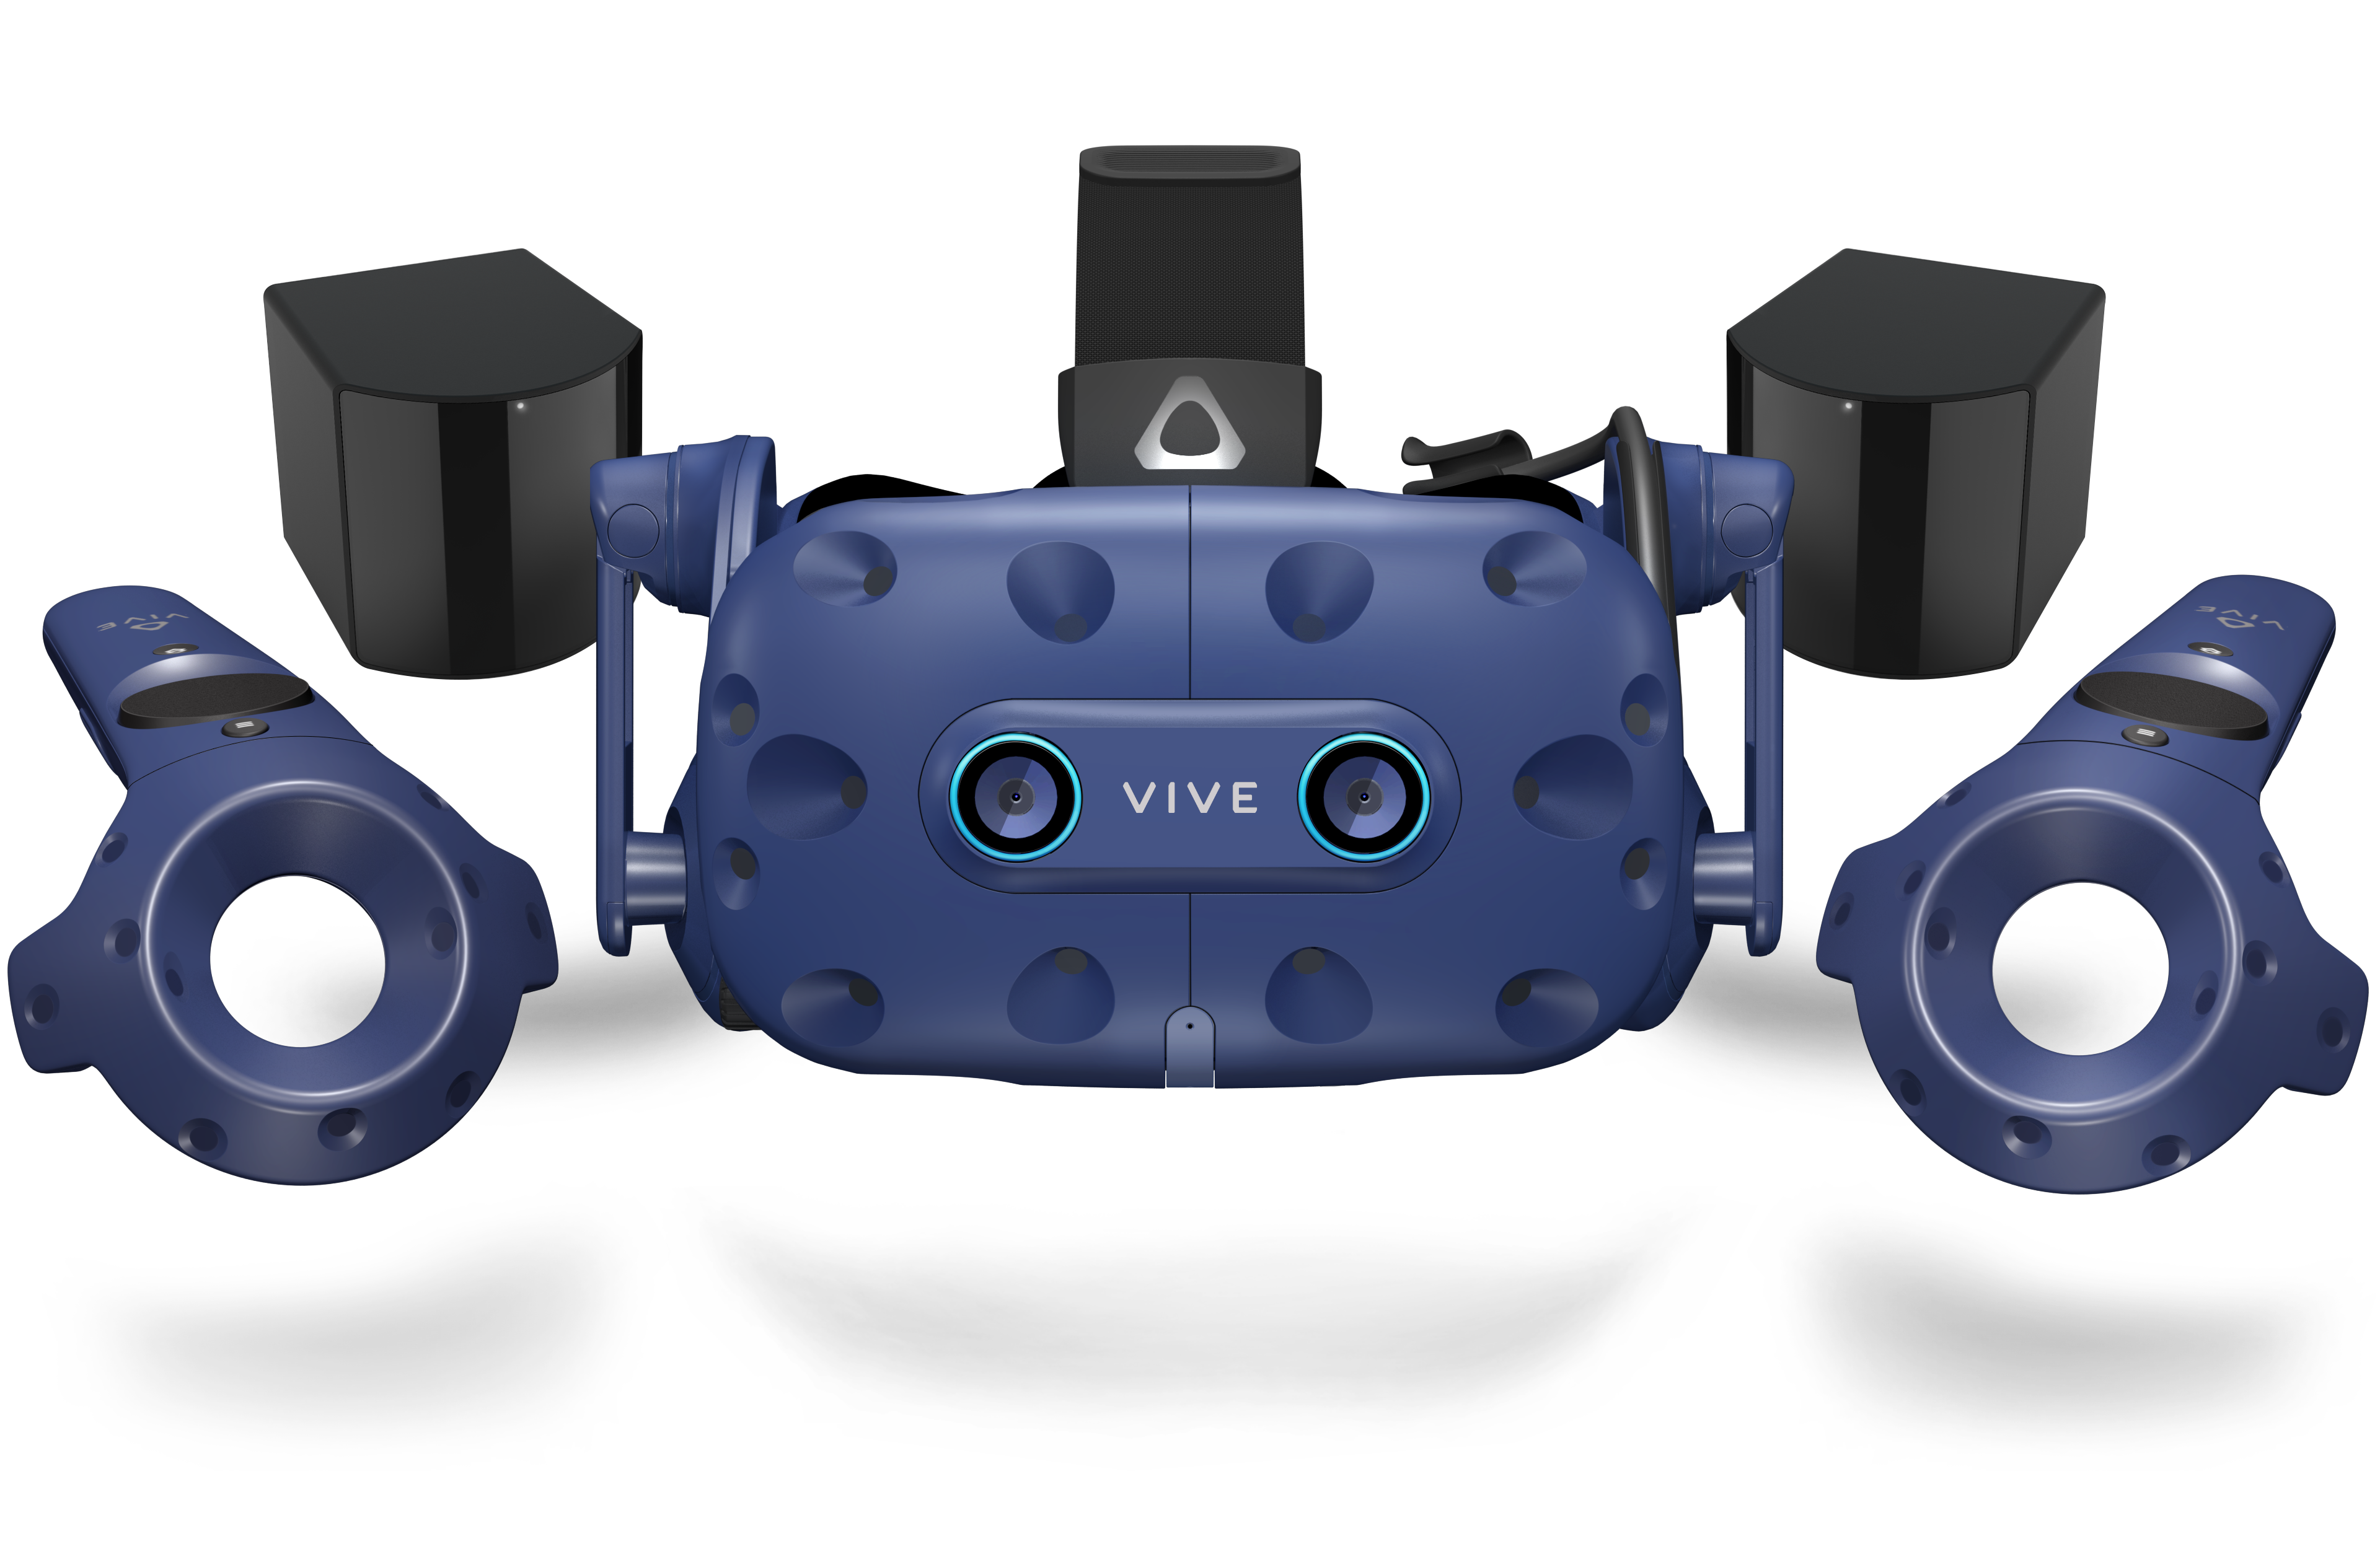 Setting a New Standard for Enterprise Virtual Reality, VIVE Pro